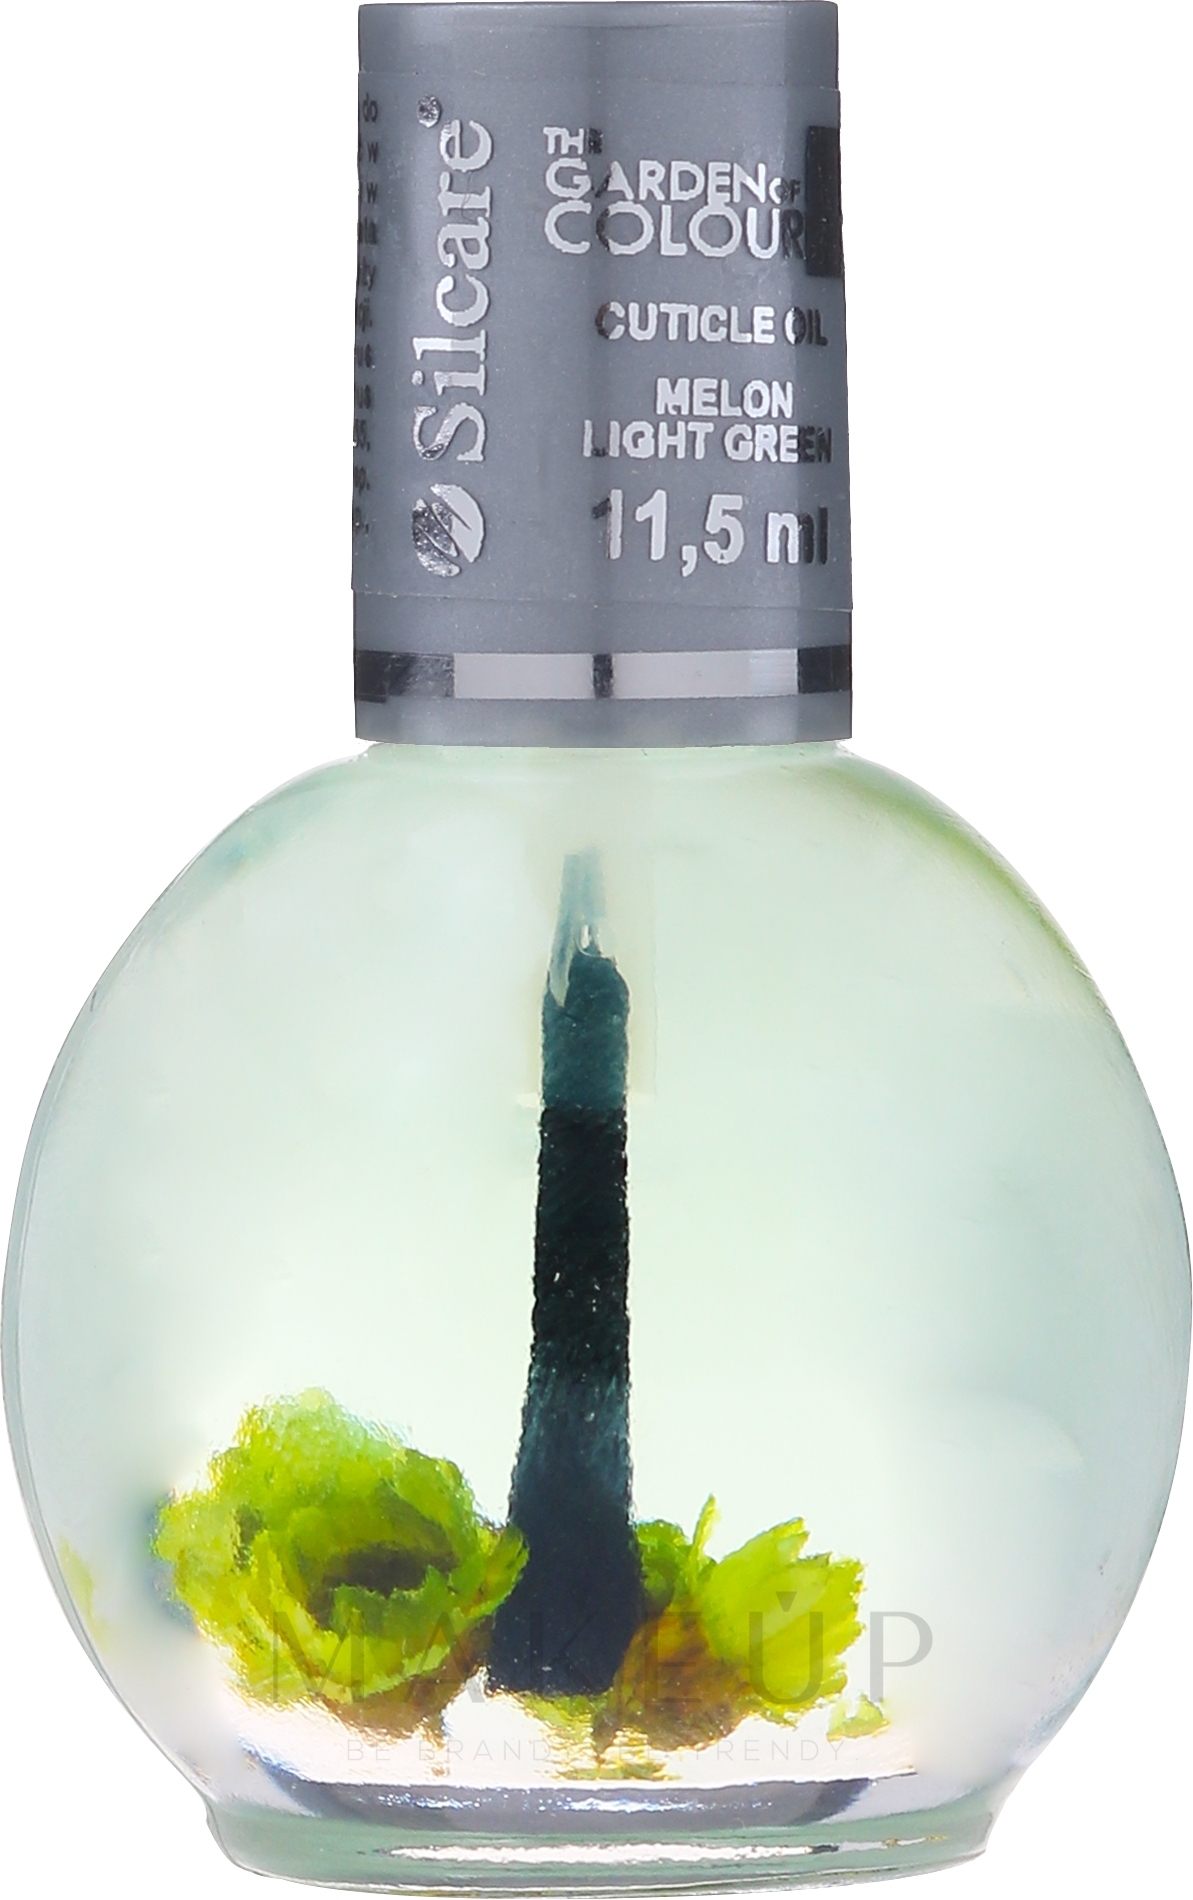 Nagel- und Nagelhautöl mit Blumen Zuckermelone - Silcare Cuticle Oil Melon Light Green — Bild 11.5 ml